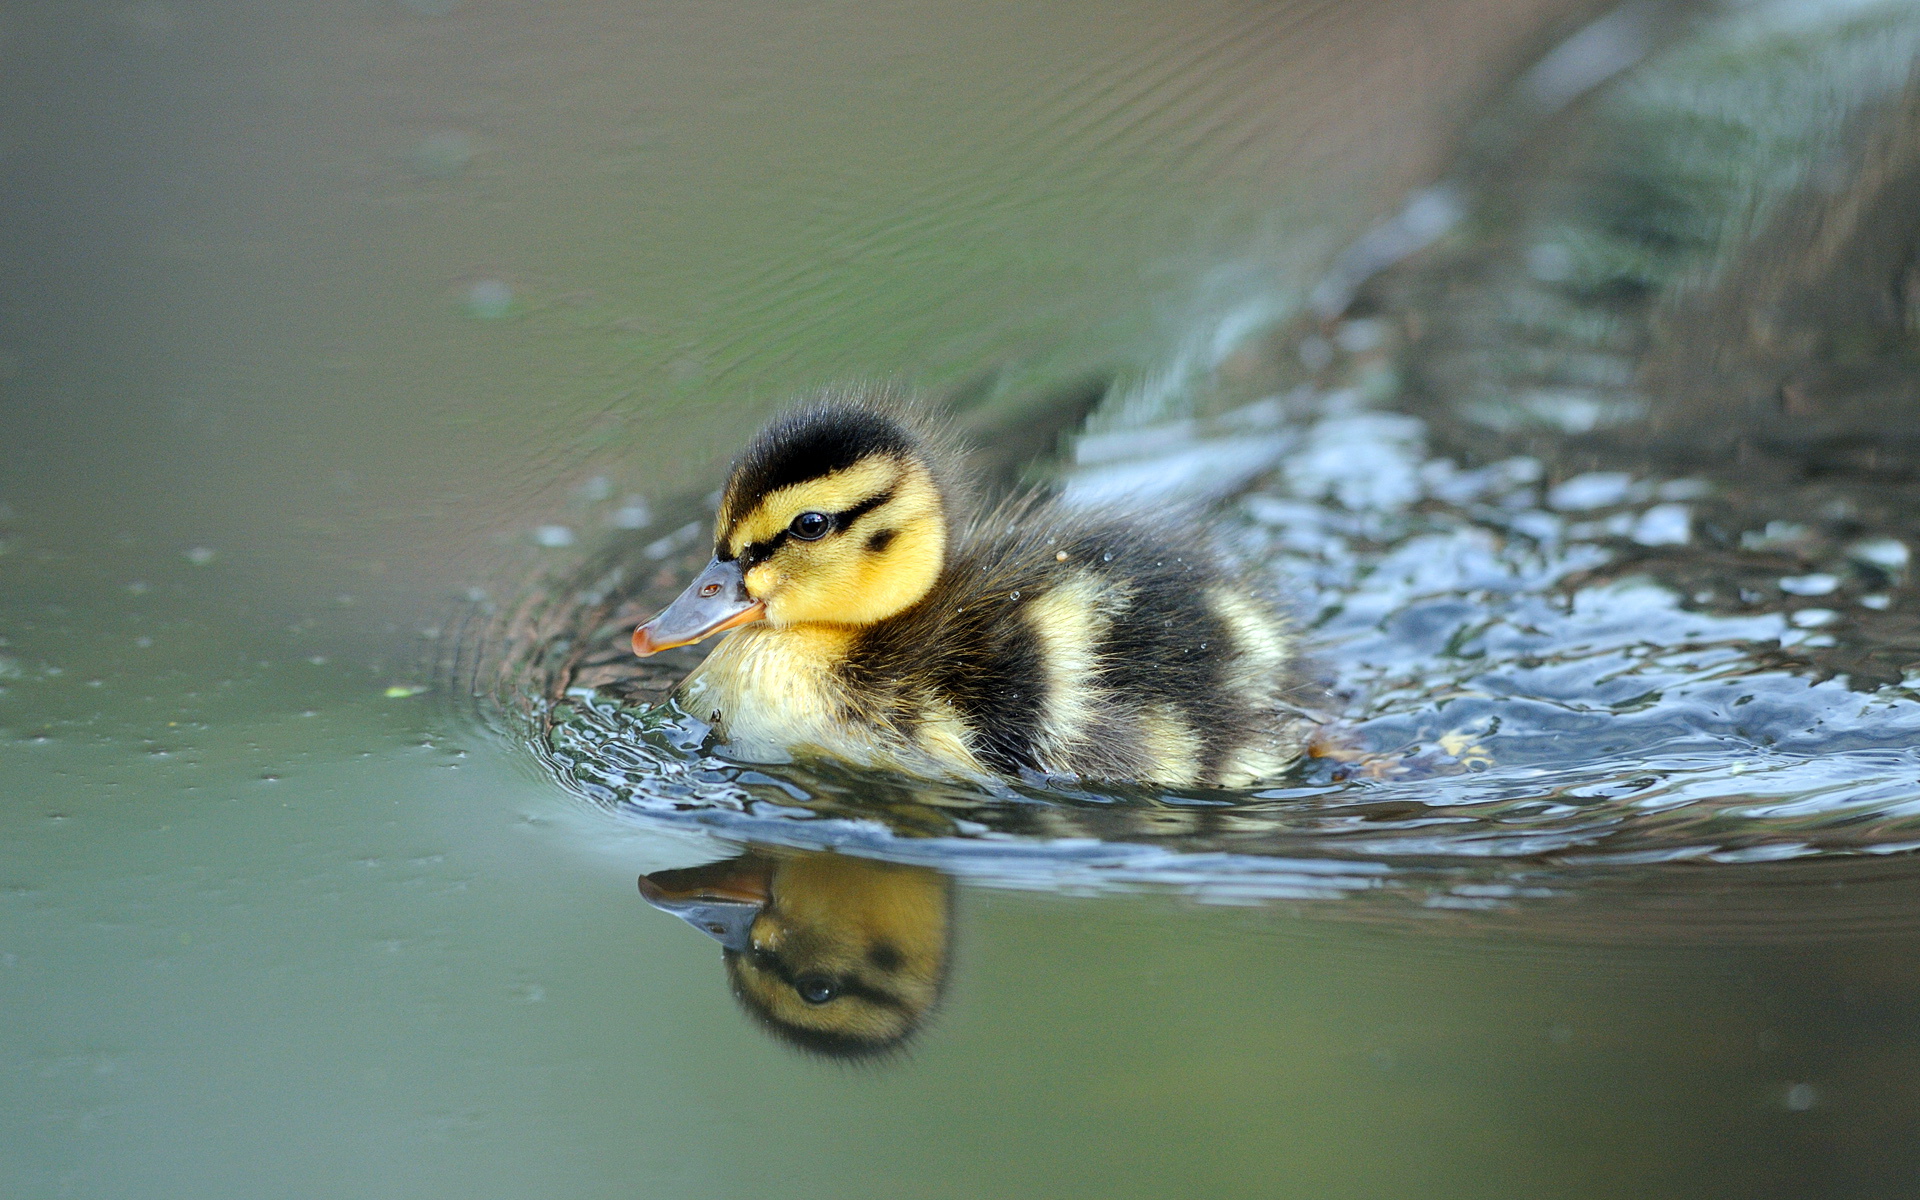 ducks, Duckling, Baby, Birds Wallpapers HD / Desktop and Mobile Backgrounds